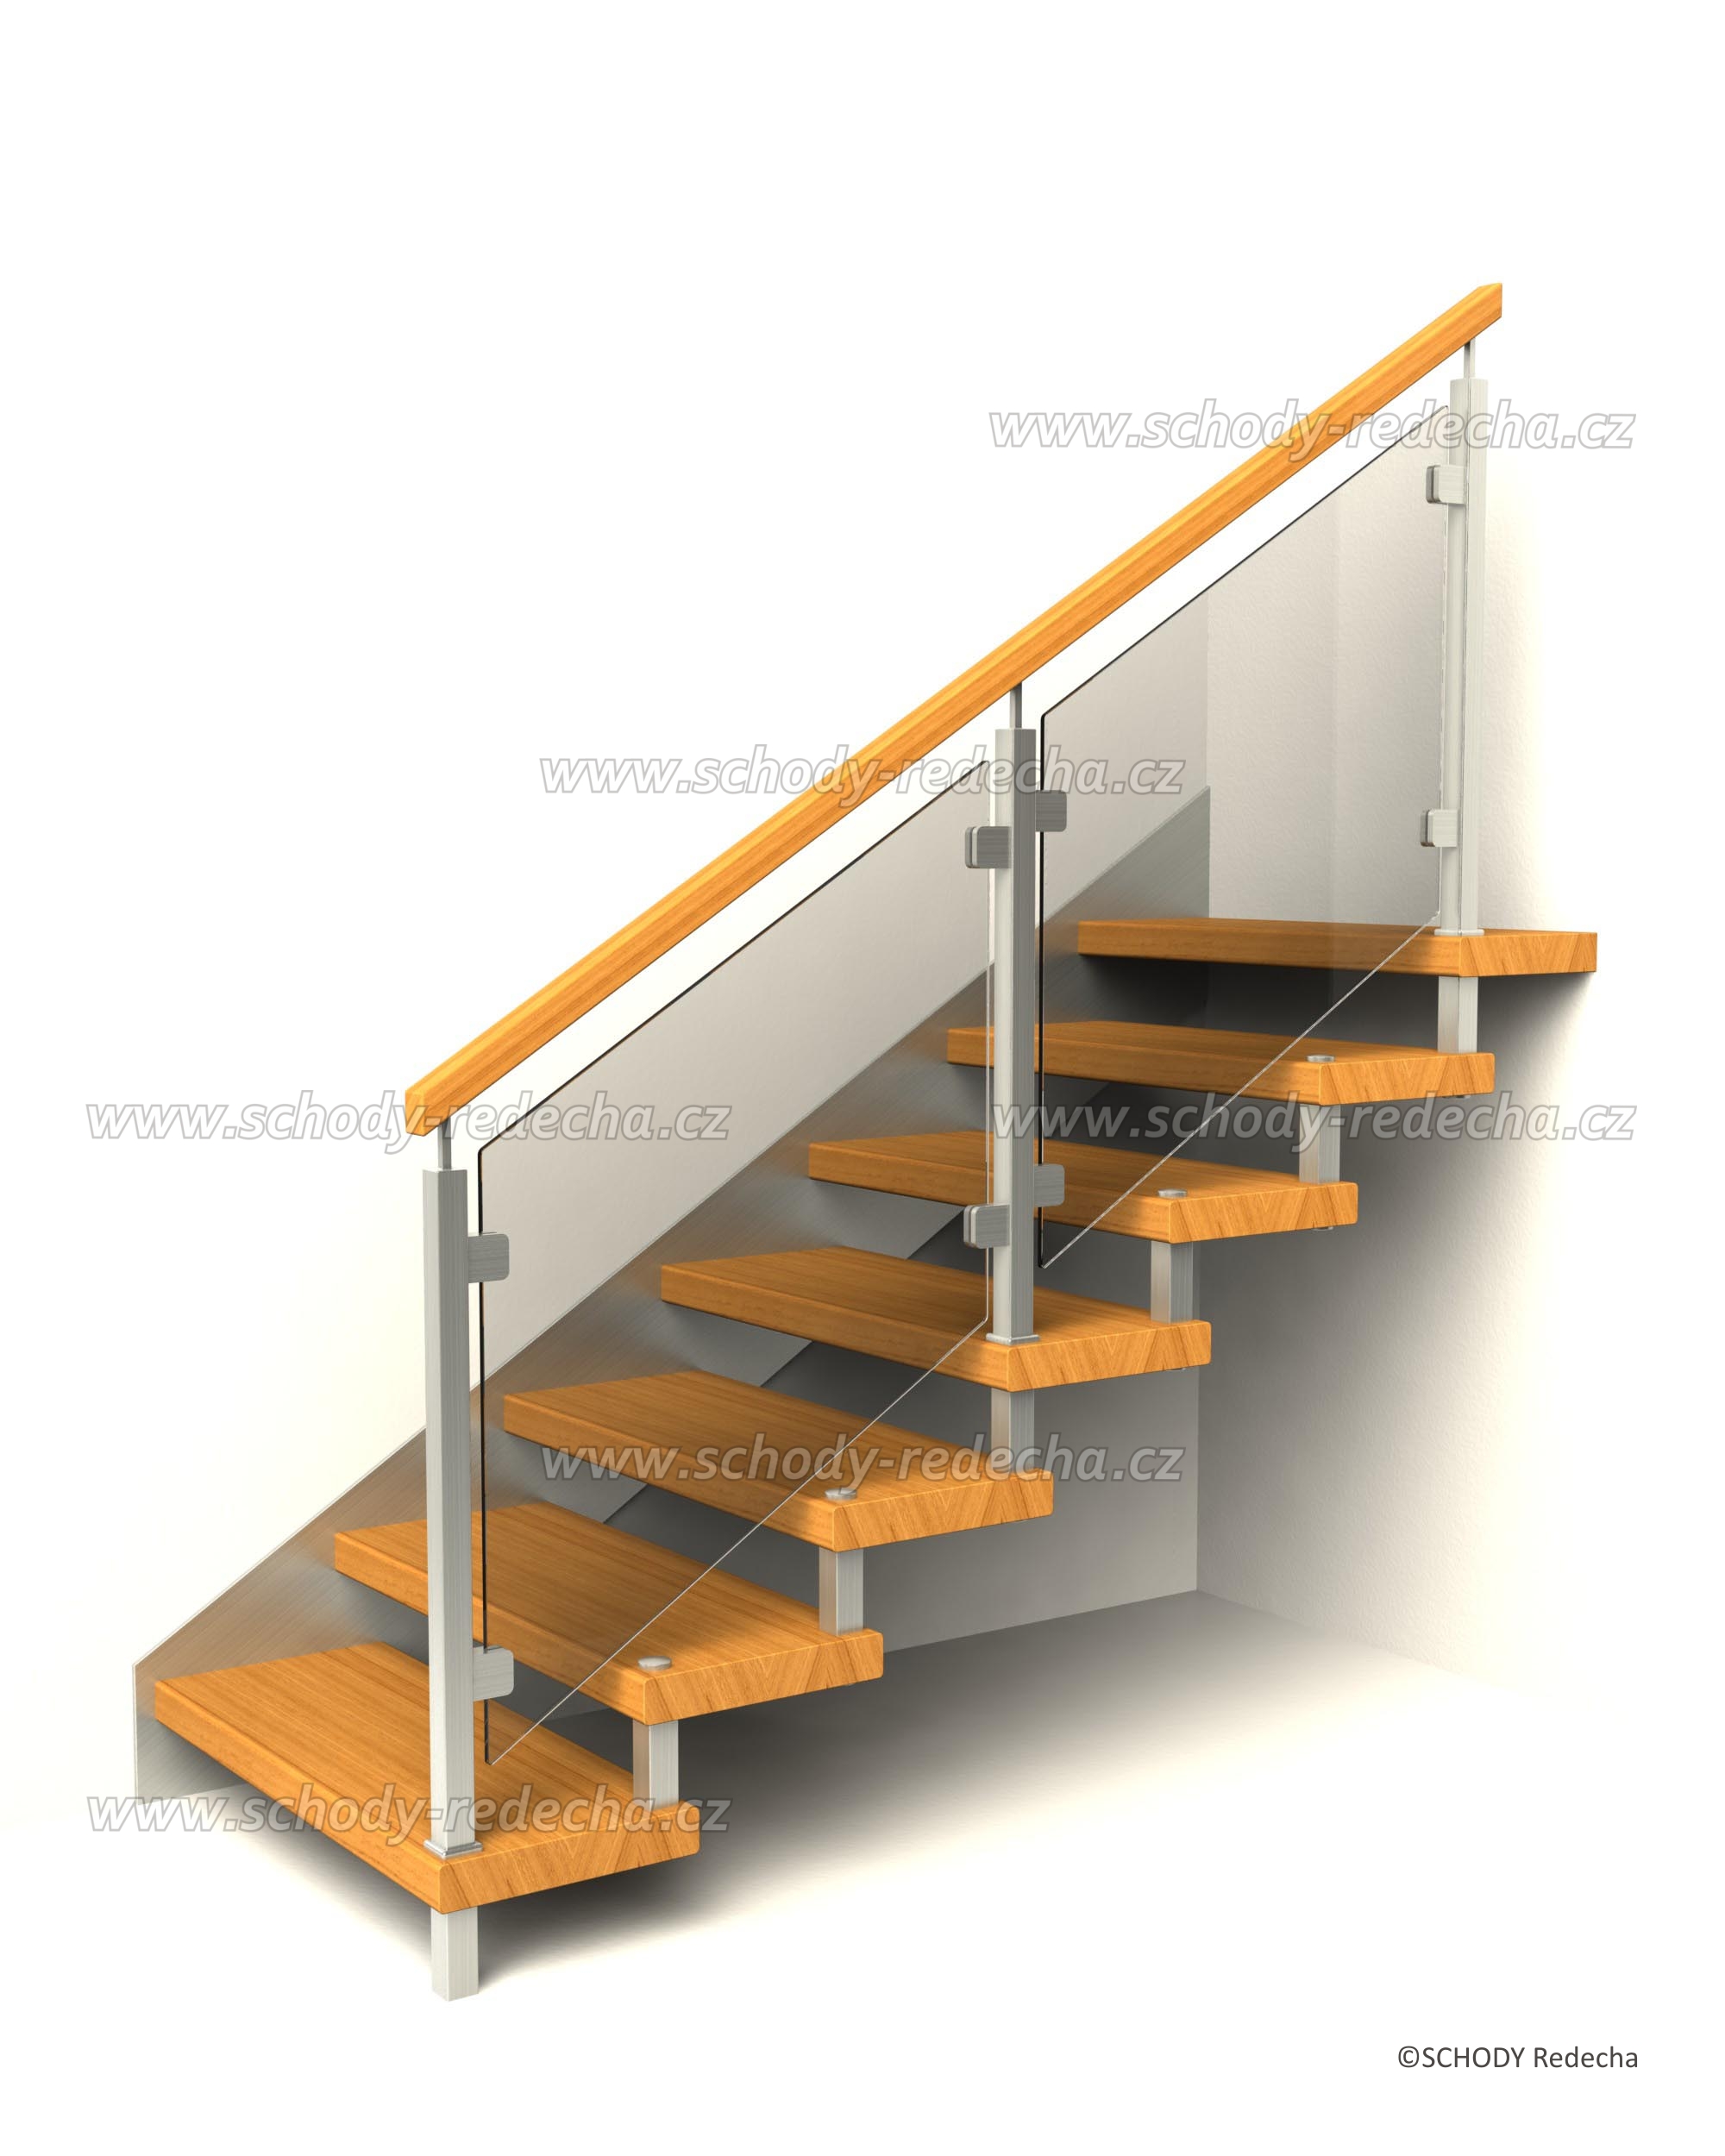 svornikova schodiste schody VIII23J6